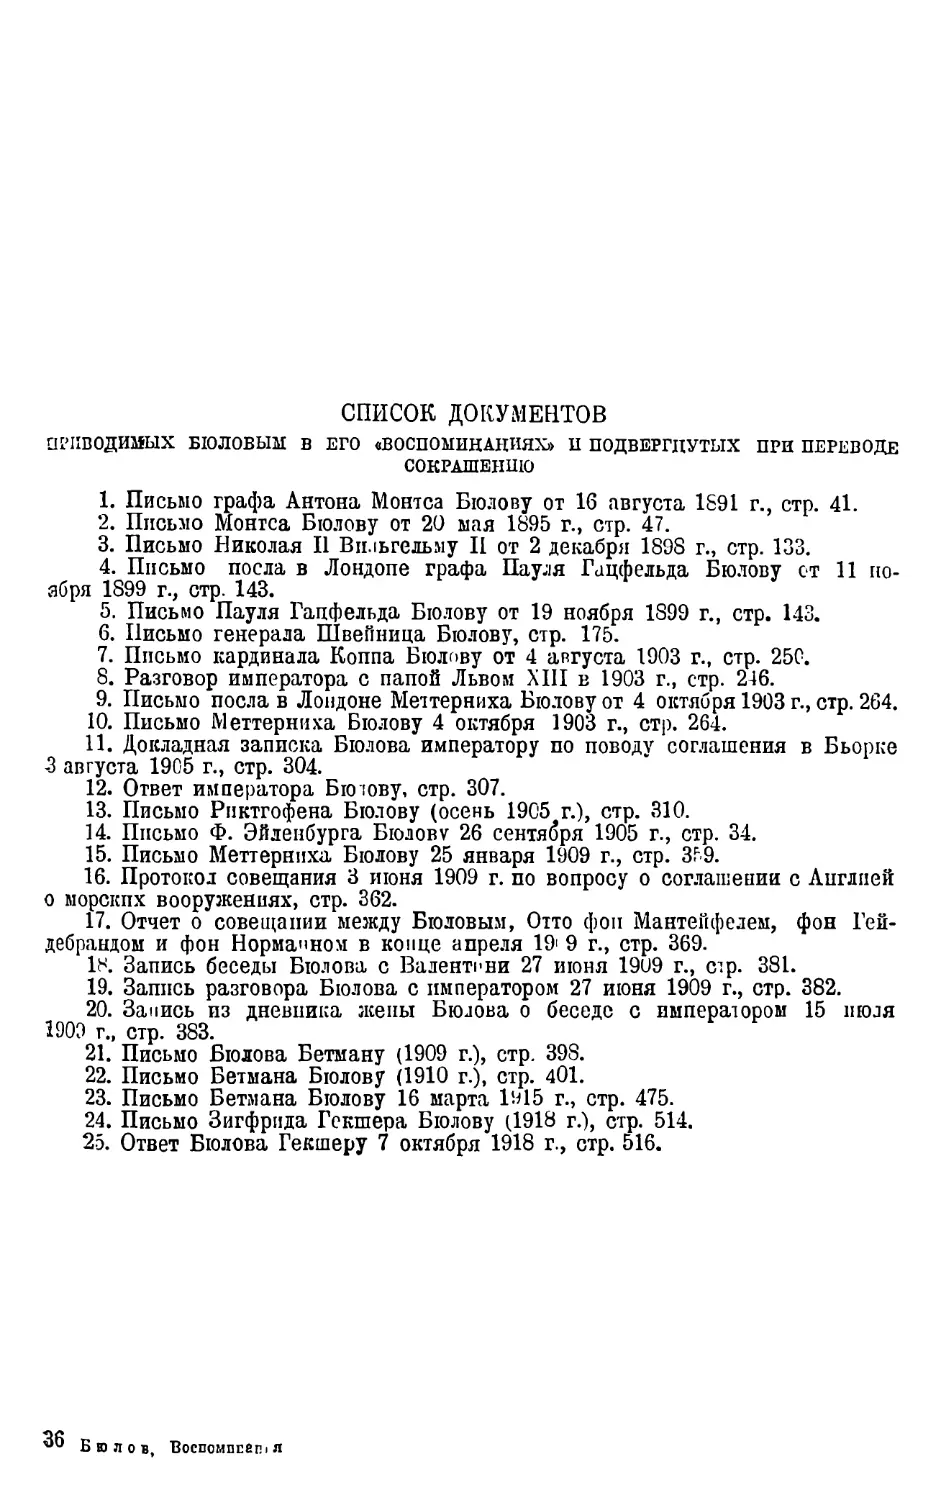 Список документов, приводимых Бюловым в его „Воспоминаниях“